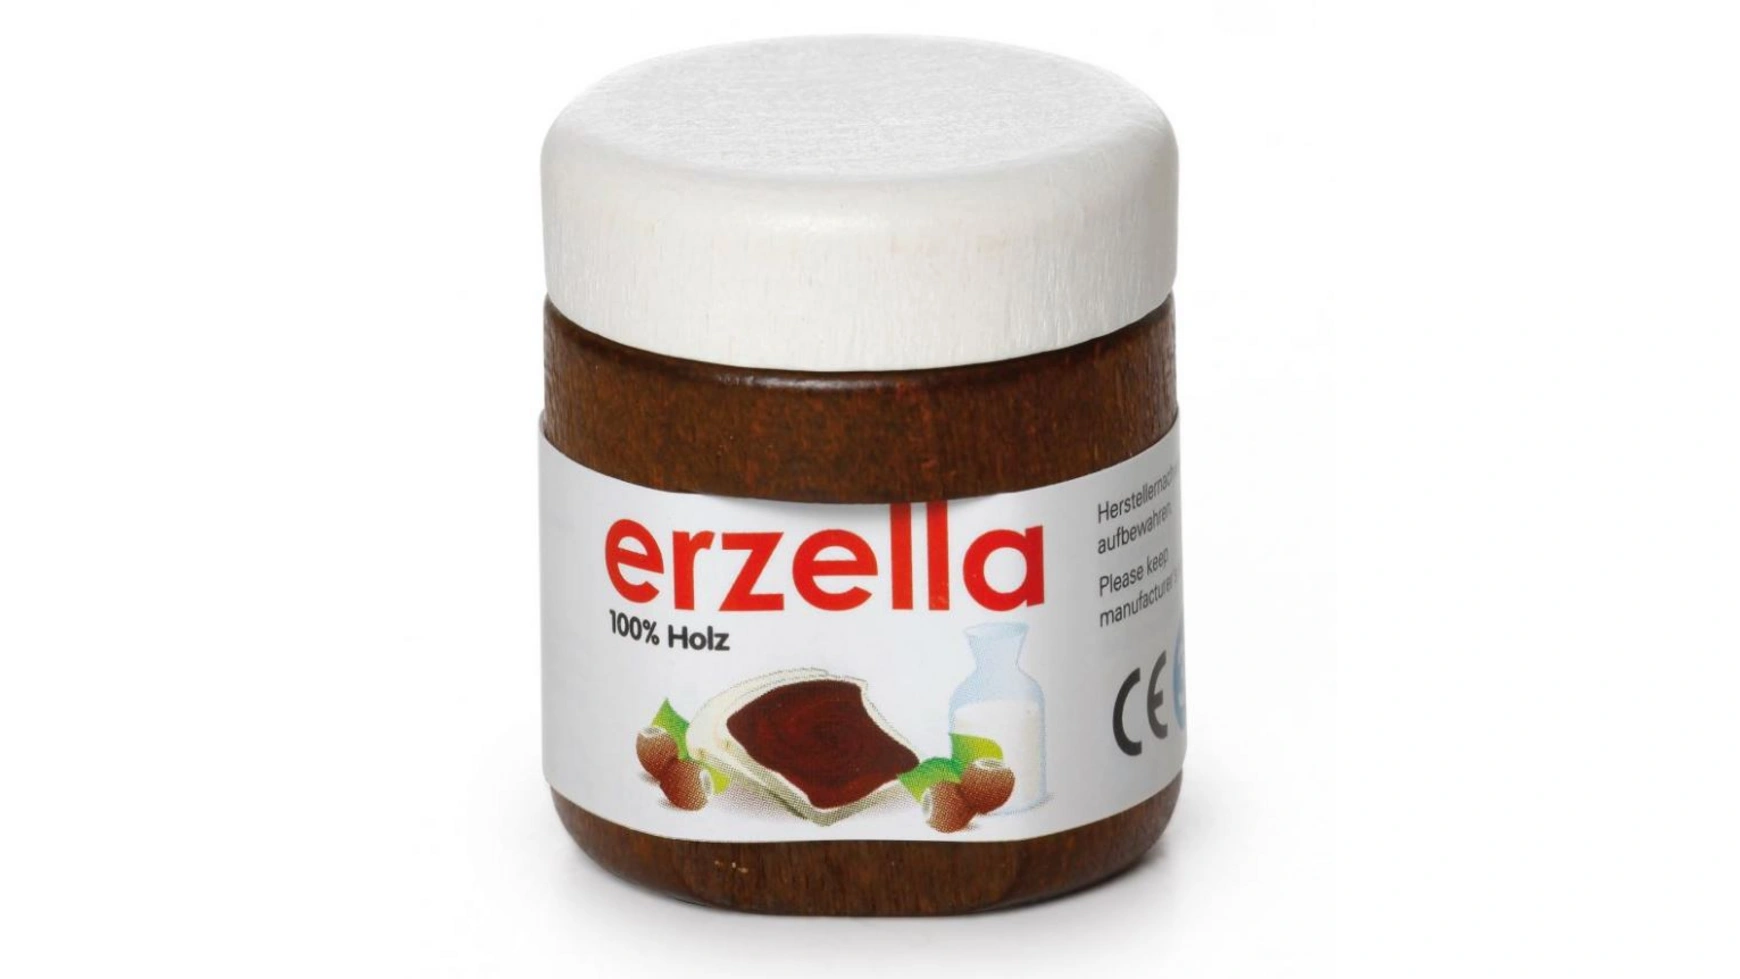 Erzi Шоколадный крем Erzella, детский магазин и игровые кухонные аксессуары